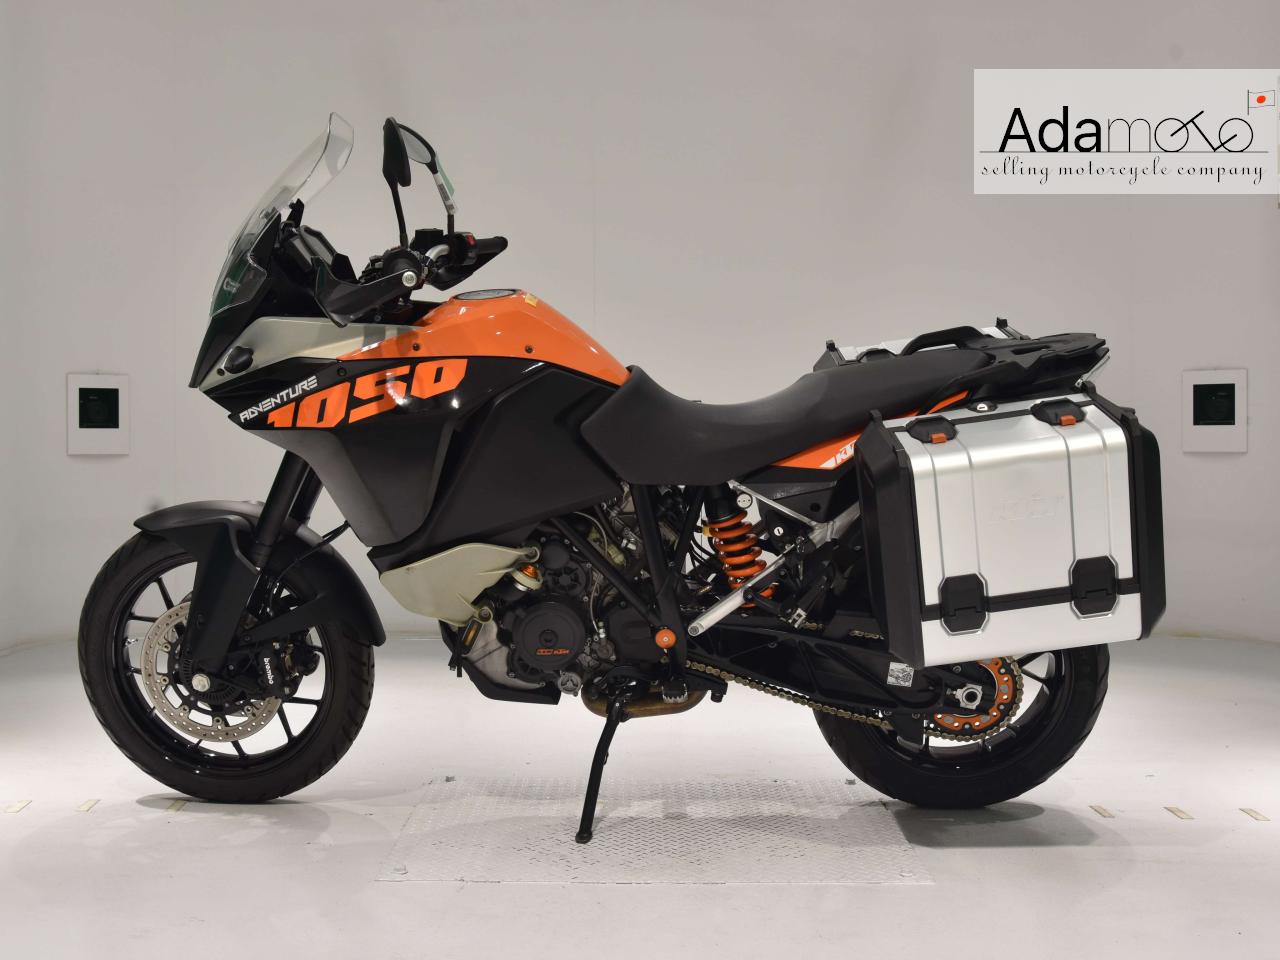 KTM 1050 ADVENTURE - Adamoto - Motorcycles from Japan